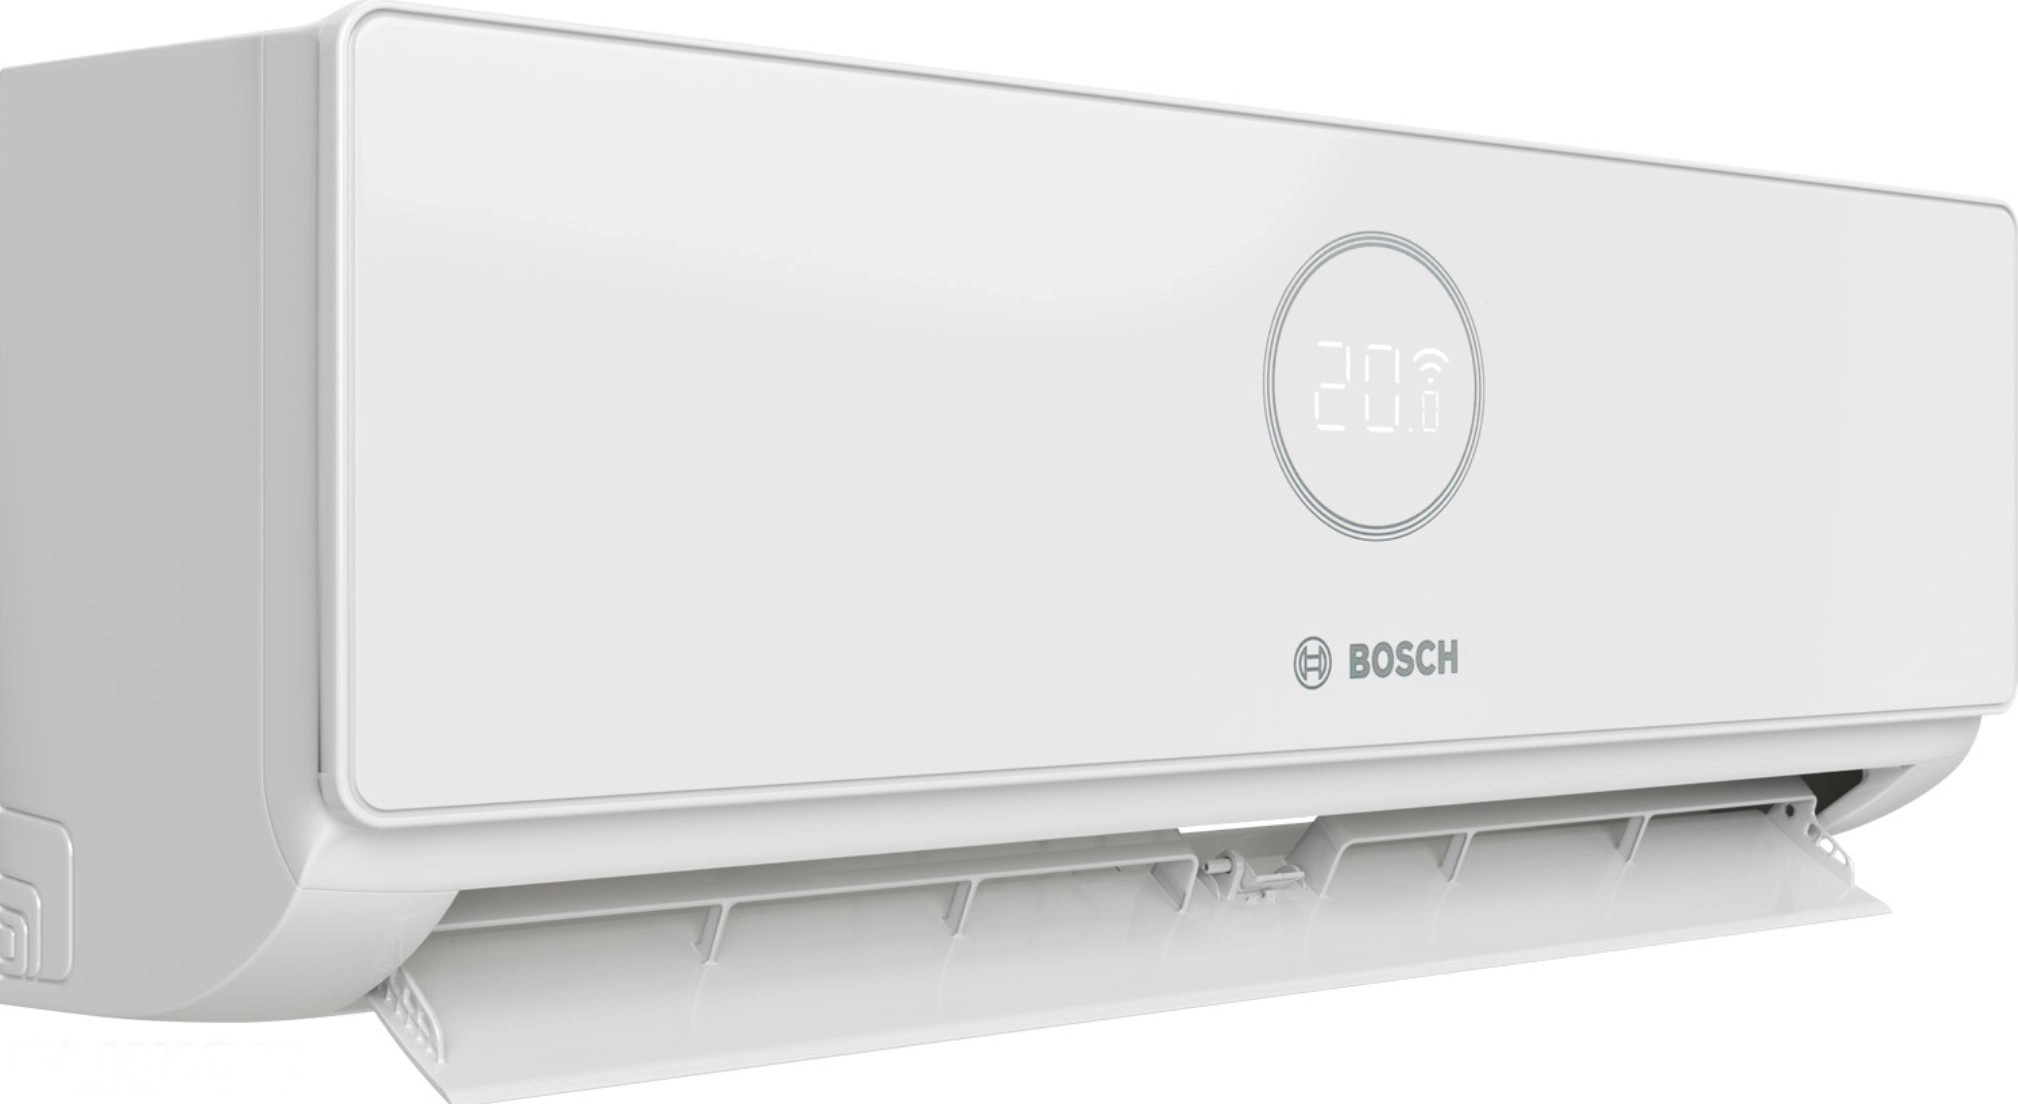 продаём Bosch CL3000iU W 53 E, 5,3 кВт в Украине - фото 4